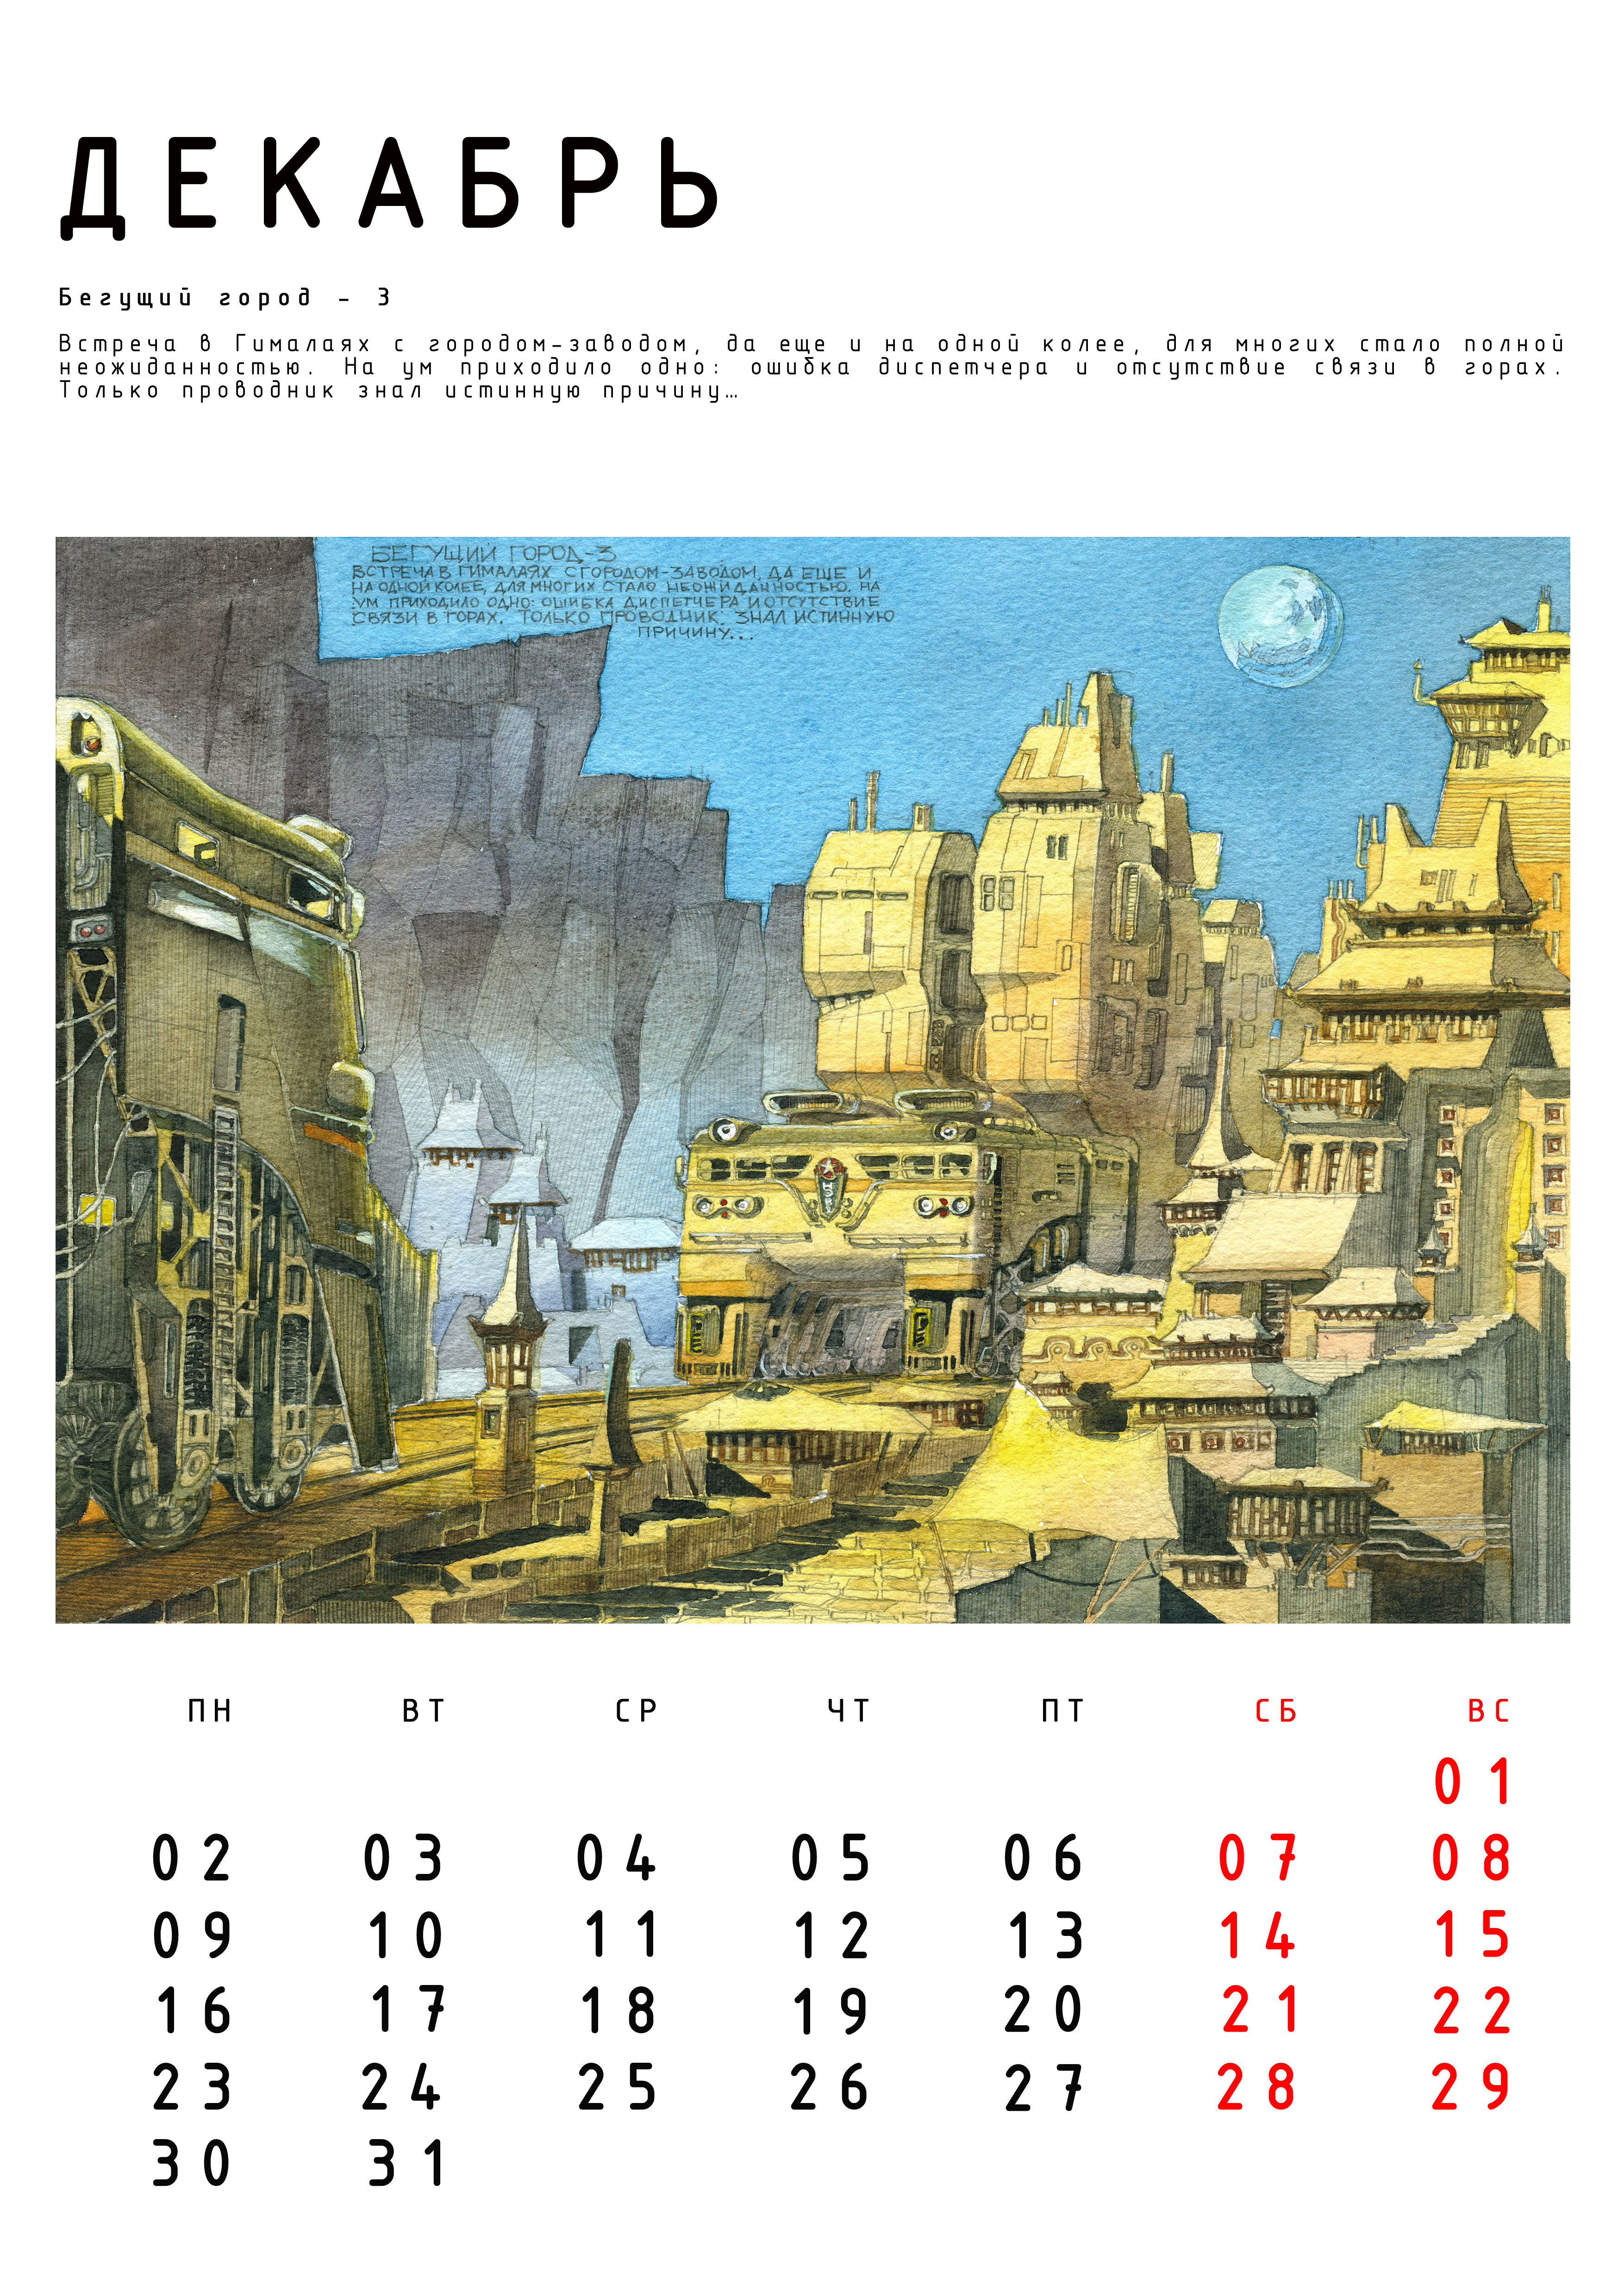 Иллюстрация Авт. календарь Бегущие Города с историями.